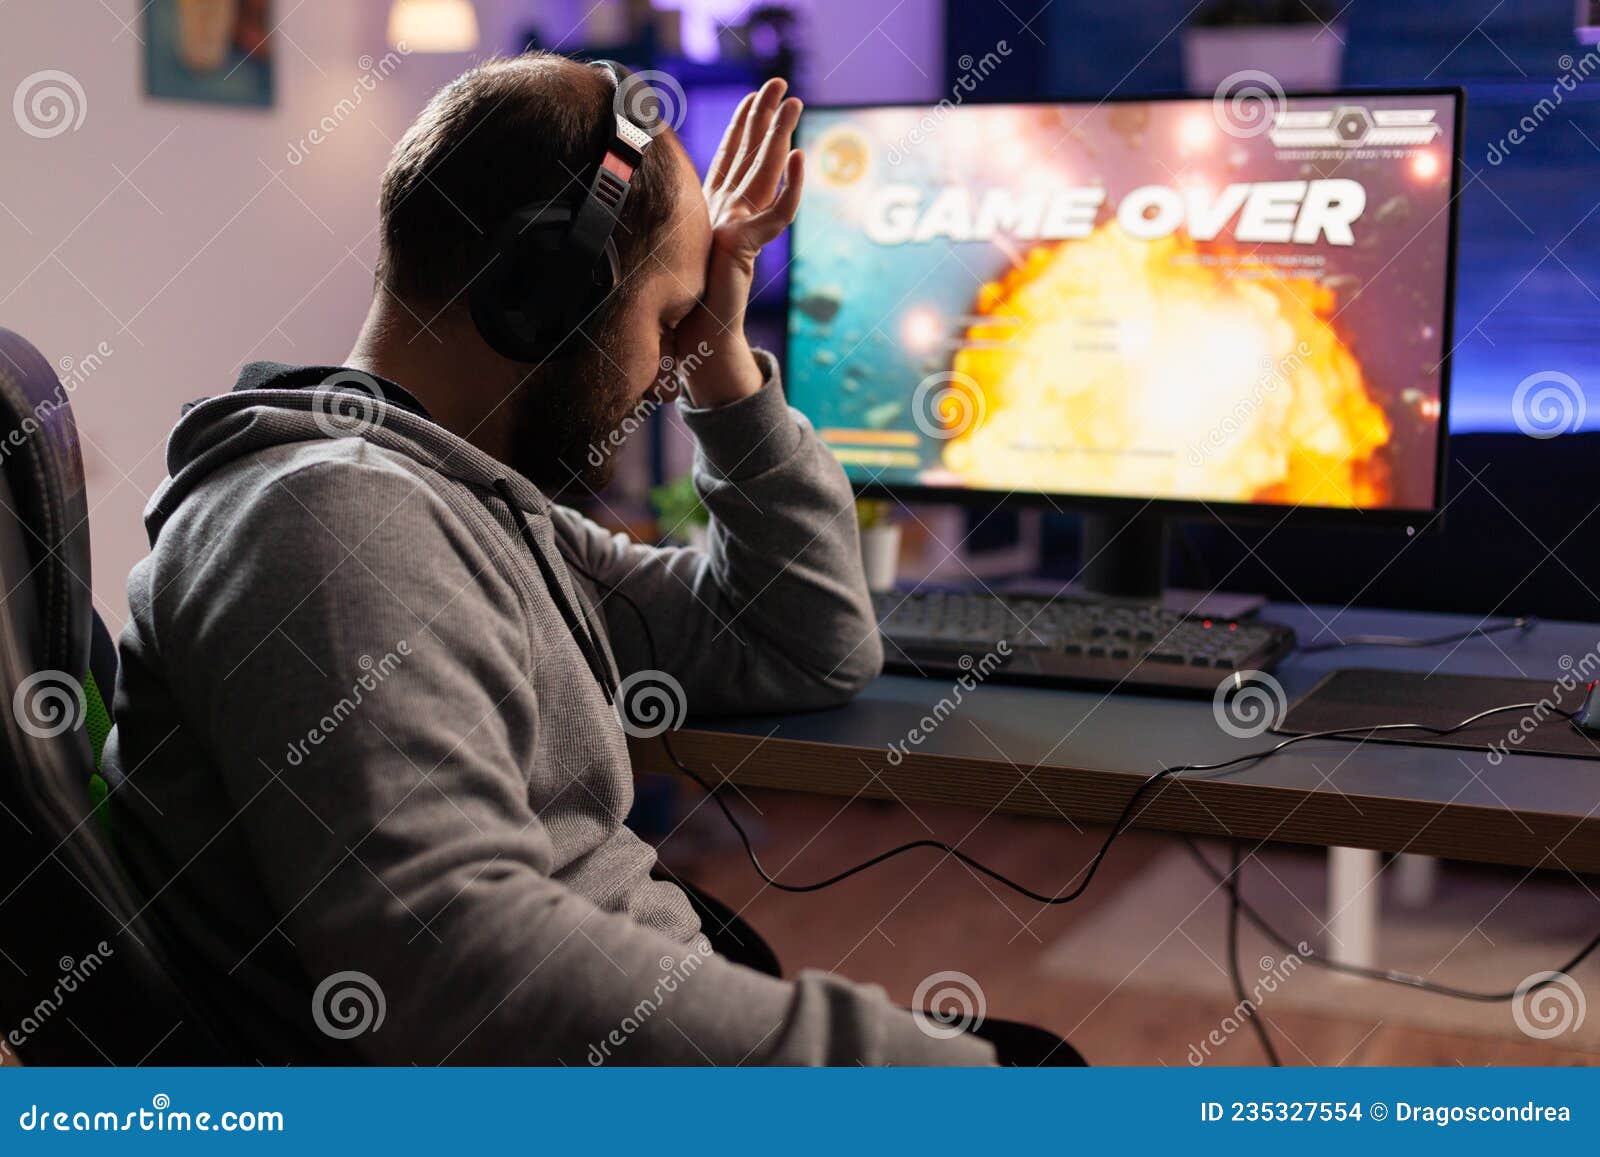 Jogador profissional jogando no jogo de vídeo on-line de tiro em